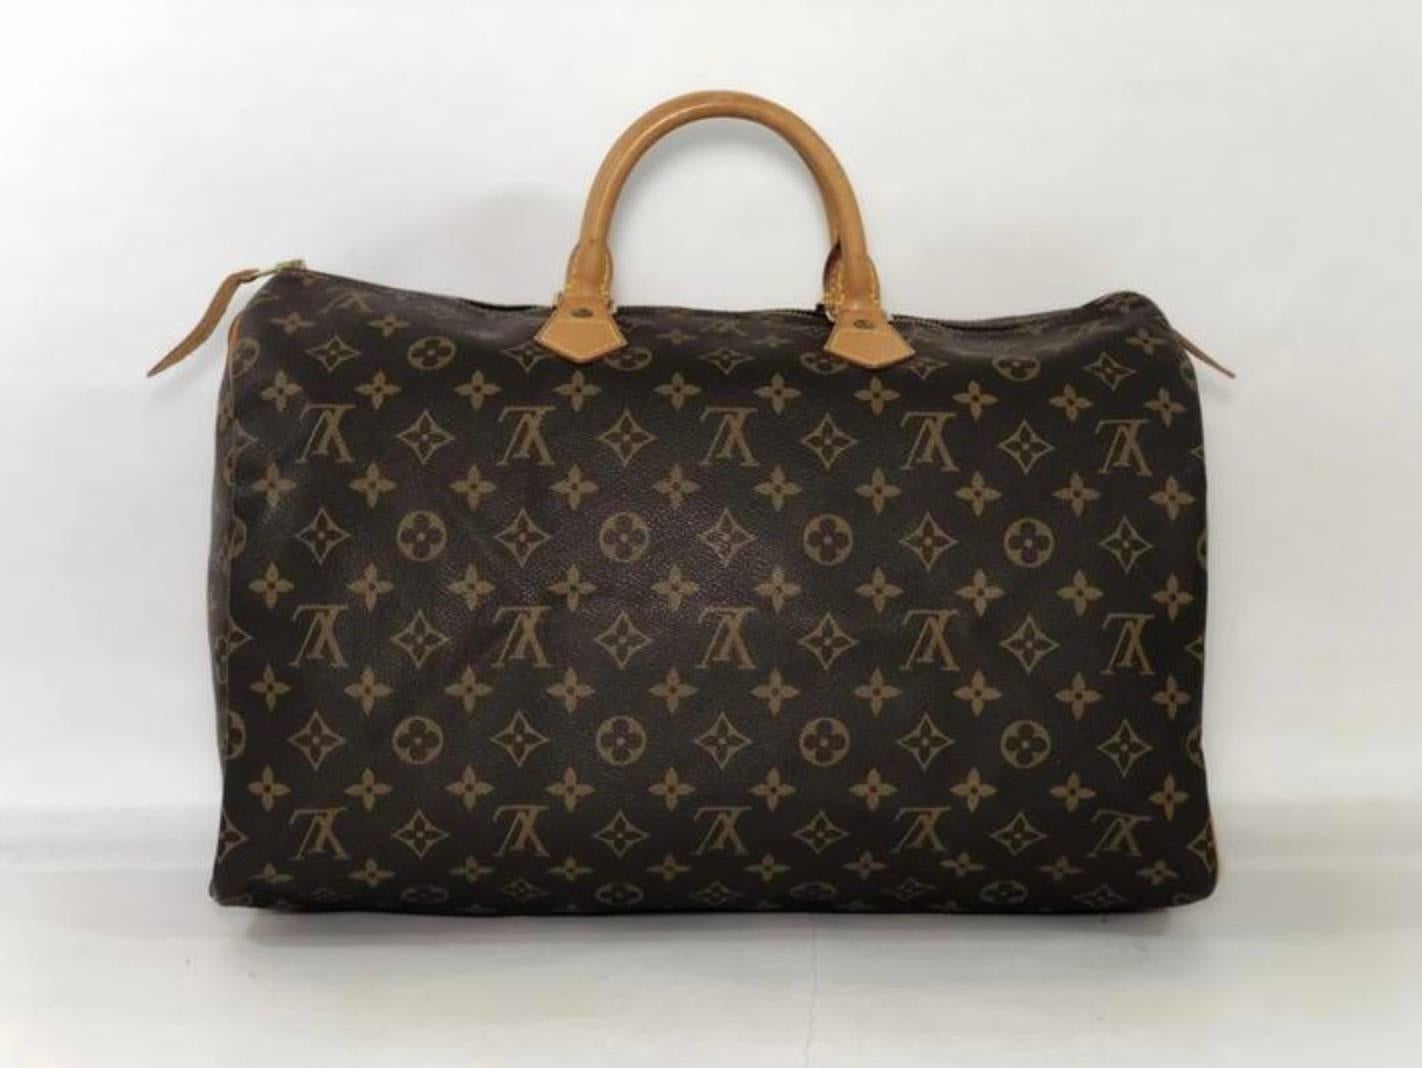 Women's or Men's Louis Vuitton Monogram Speedy 40 Satchel Handbag